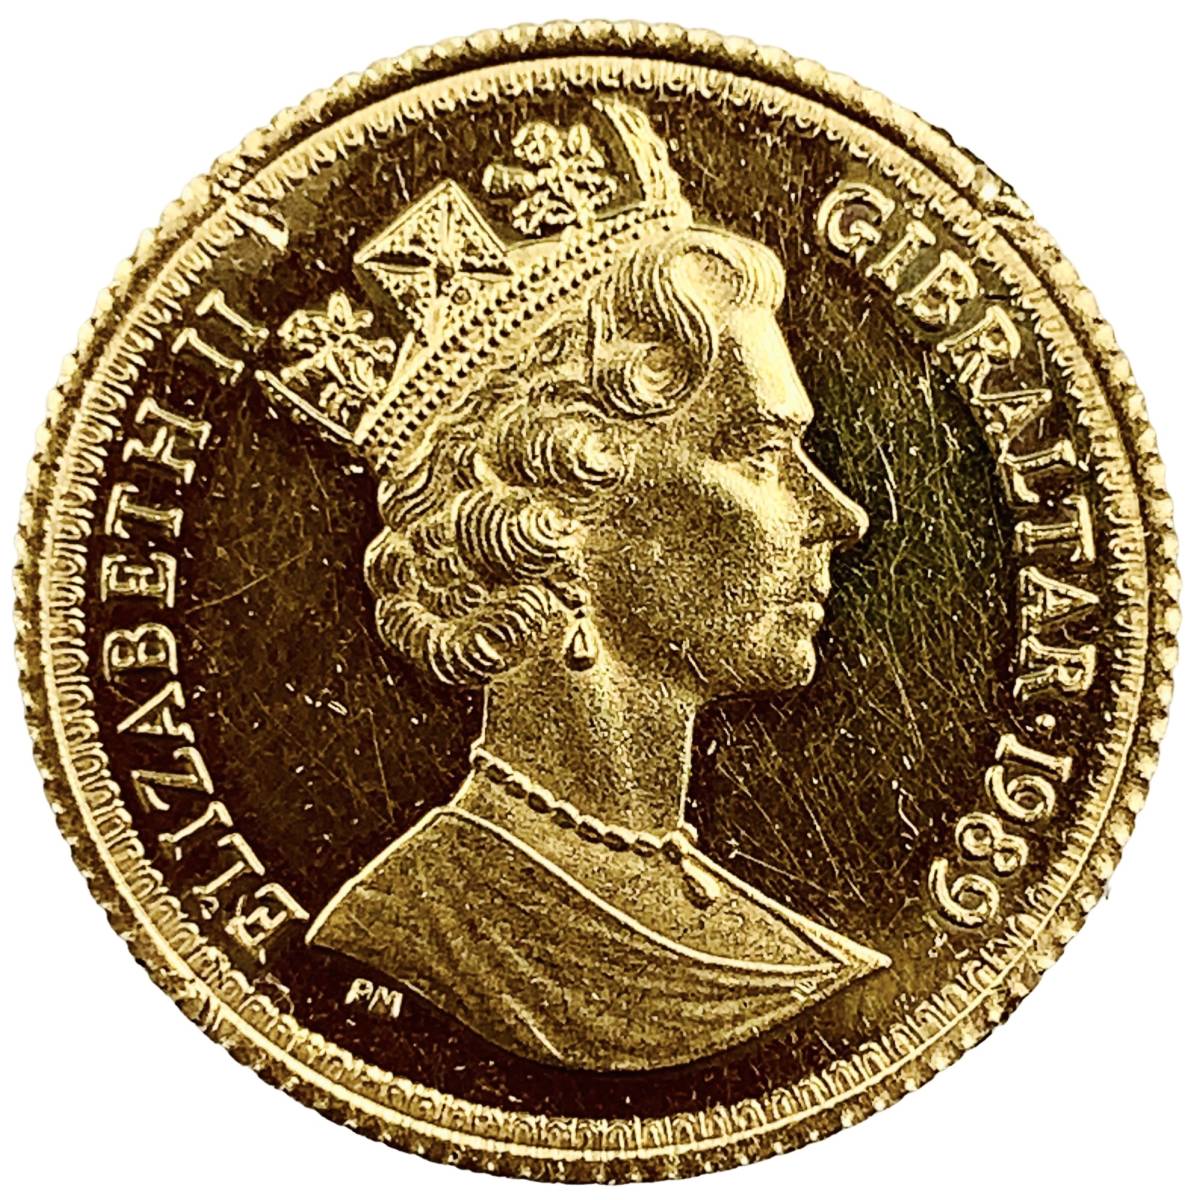 ウナとライオン金貨 ジブラルタル イエローゴールド 22金 1989年 4.2g コレクション アンティークコイン_画像2